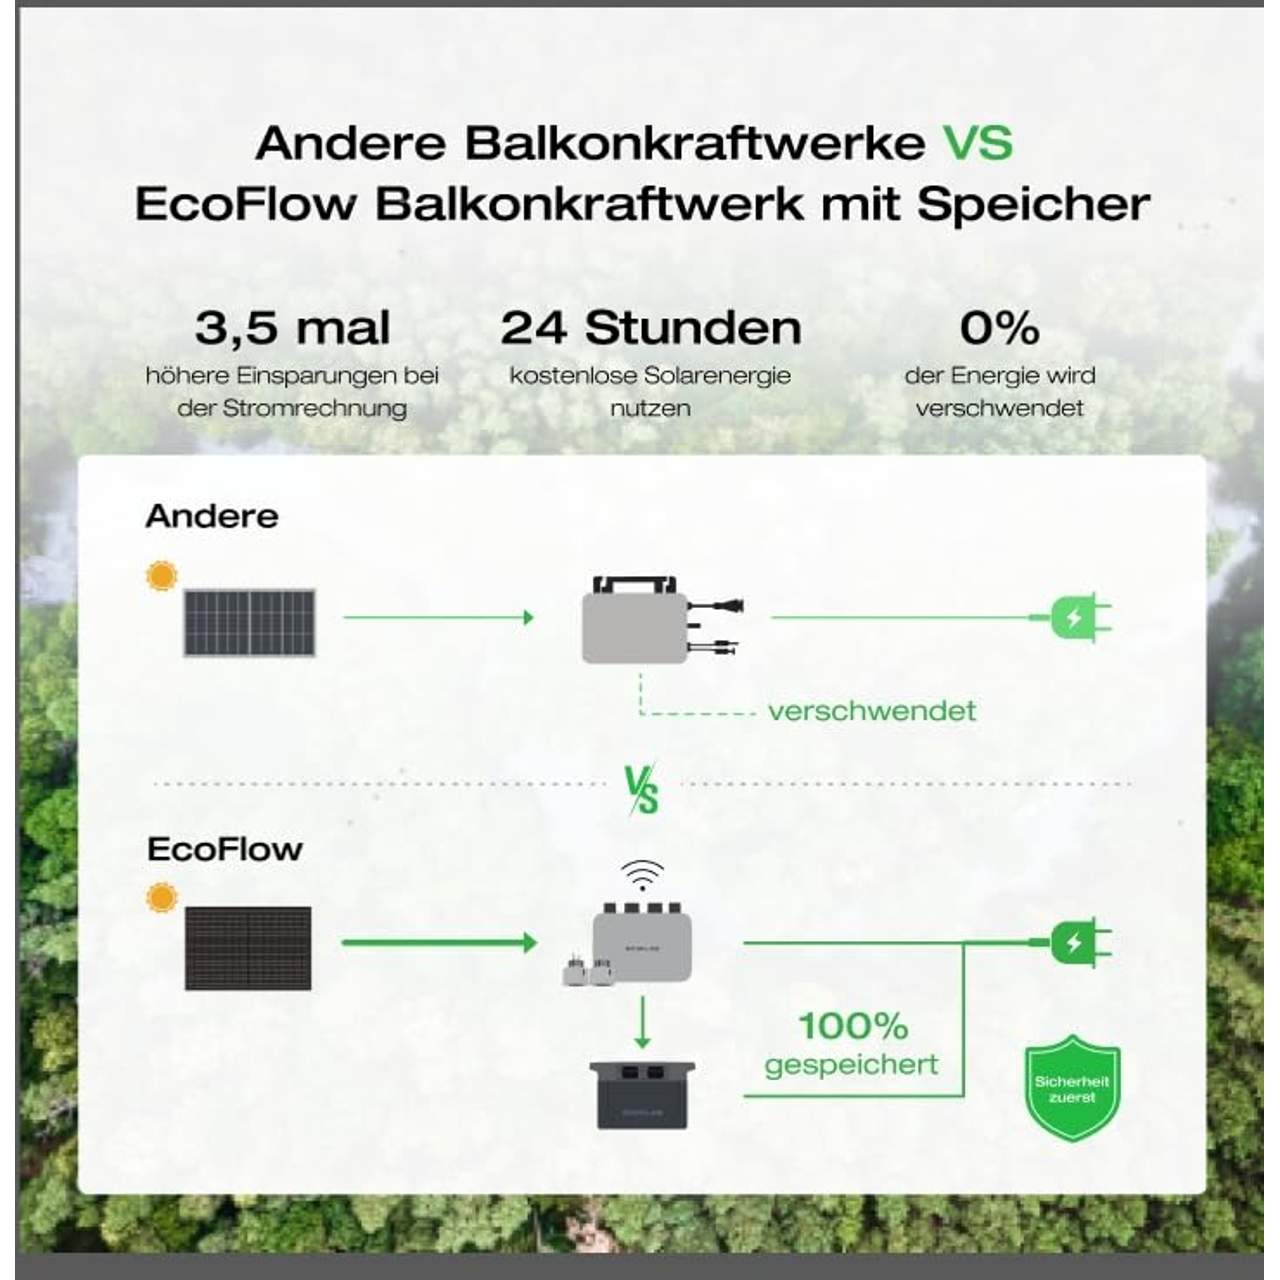 EcoFlow PowerStream Balkonkraftwerk 0% VAT